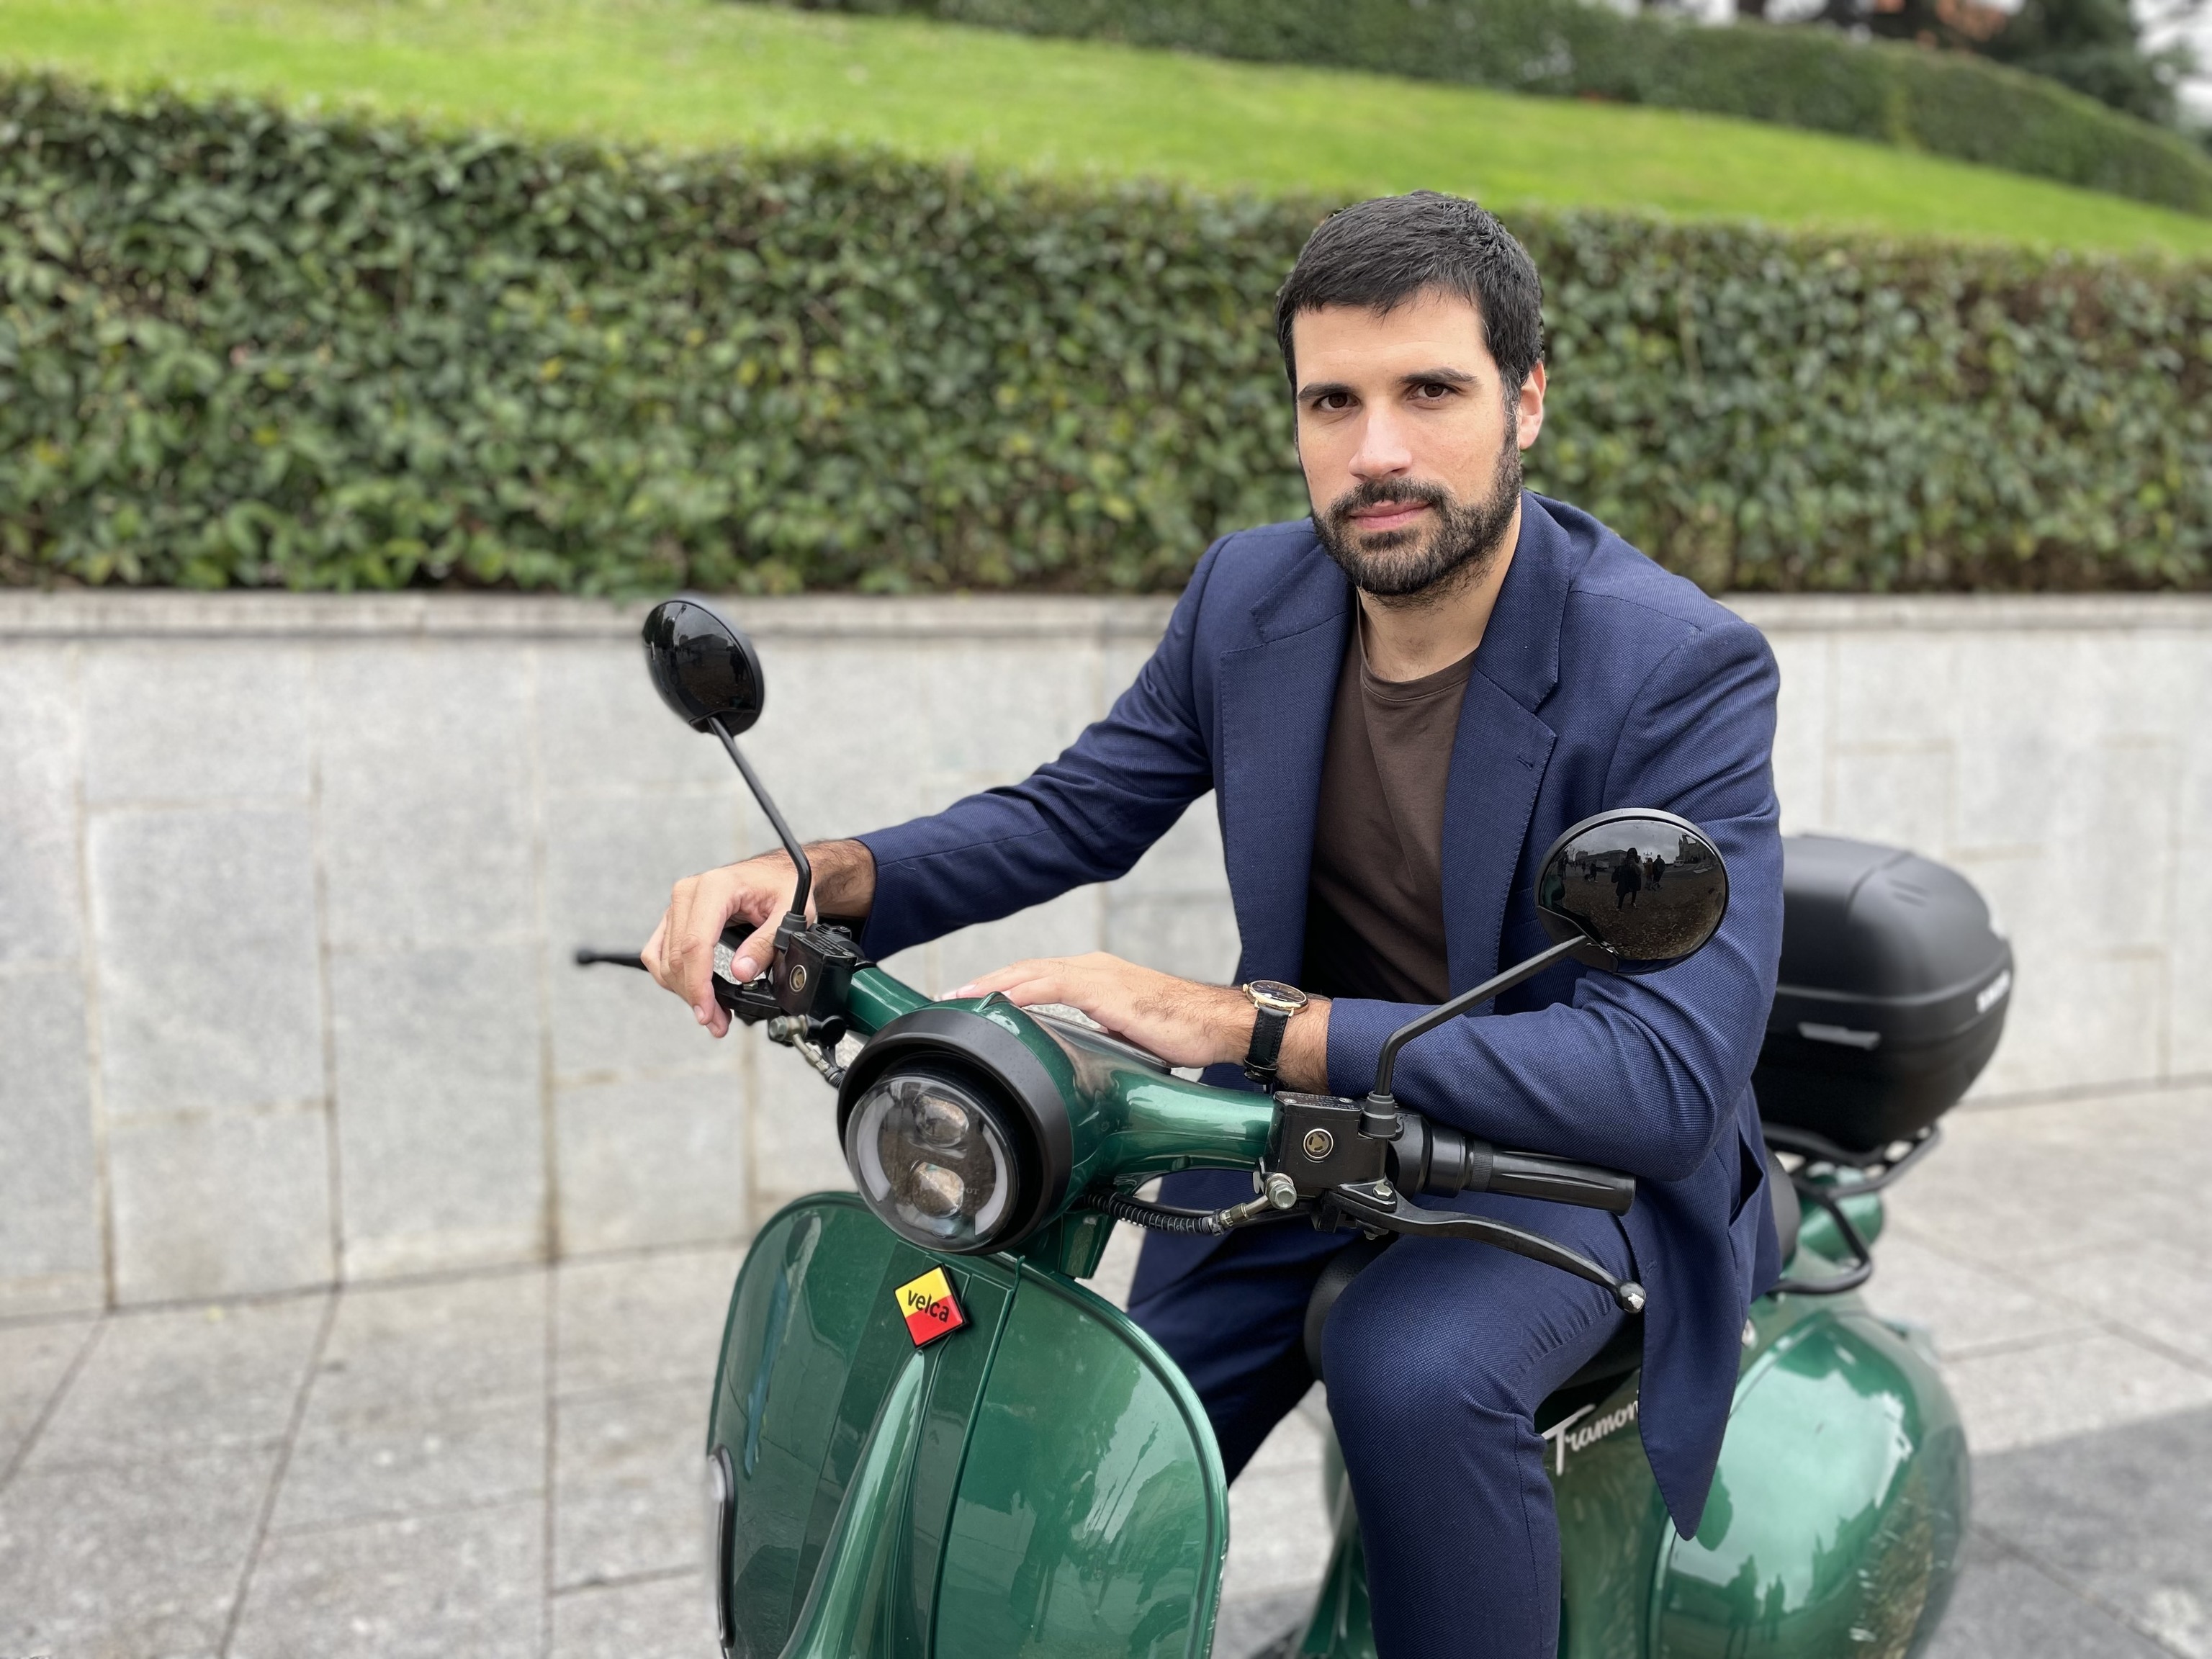 El doblete de Velca, la marca española de ciclomotores que convence a inversores y conductores